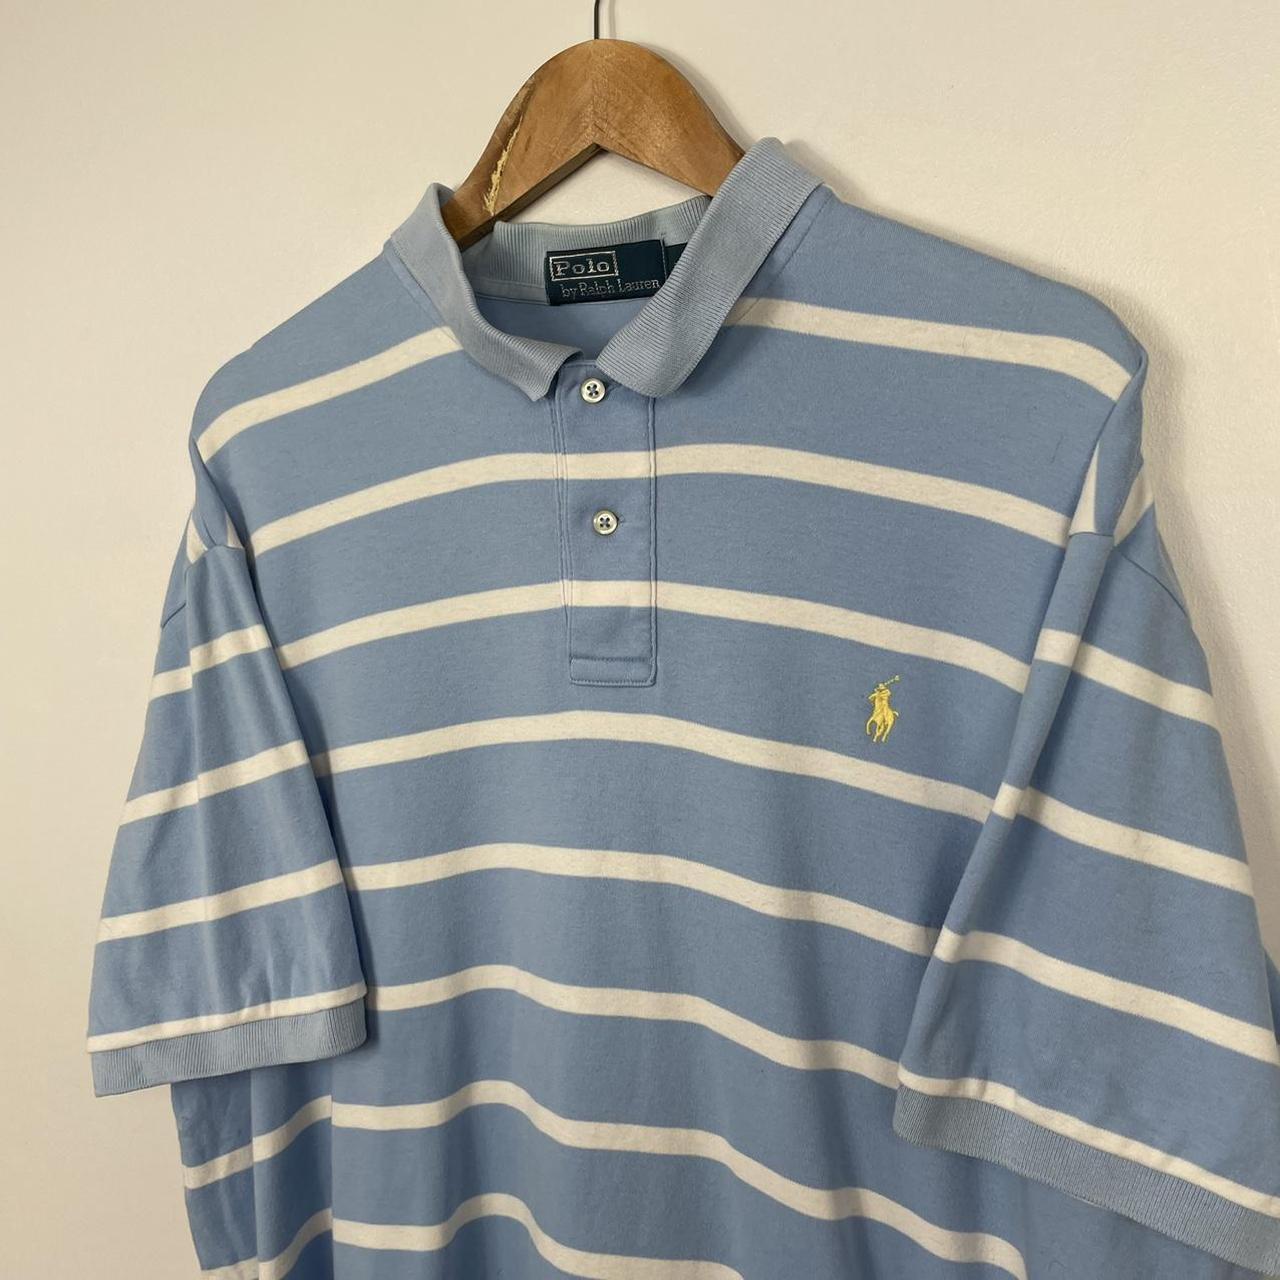 Polo Ralph Lauren Striped Jersey Polo Shirt, Blue... - Depop